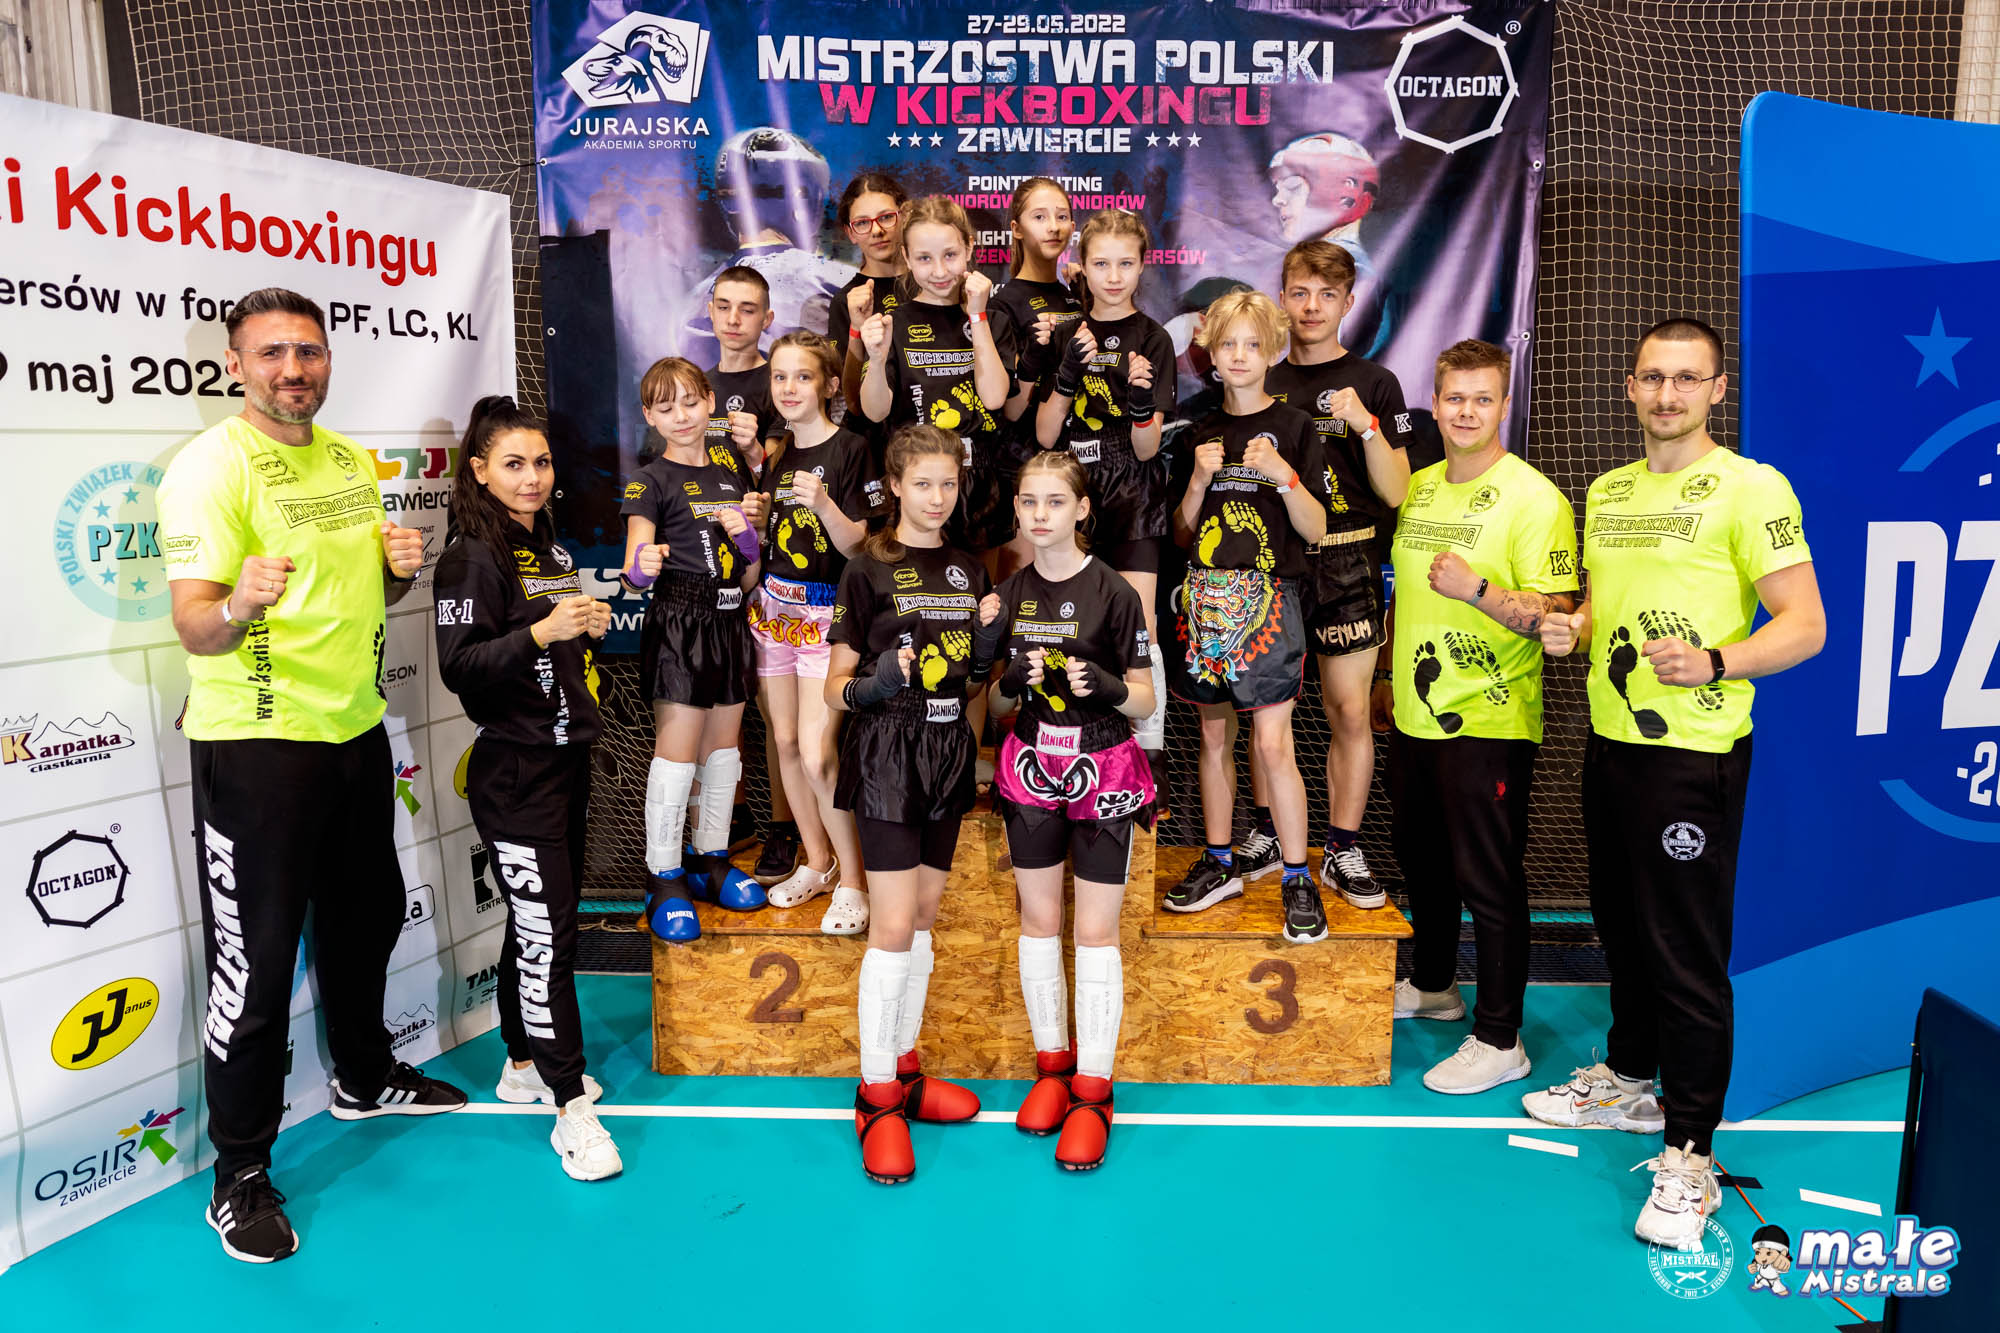 Mistrzostwa Polski Kickboxing, Zawiercie 26-29.05.2022-356.jpg